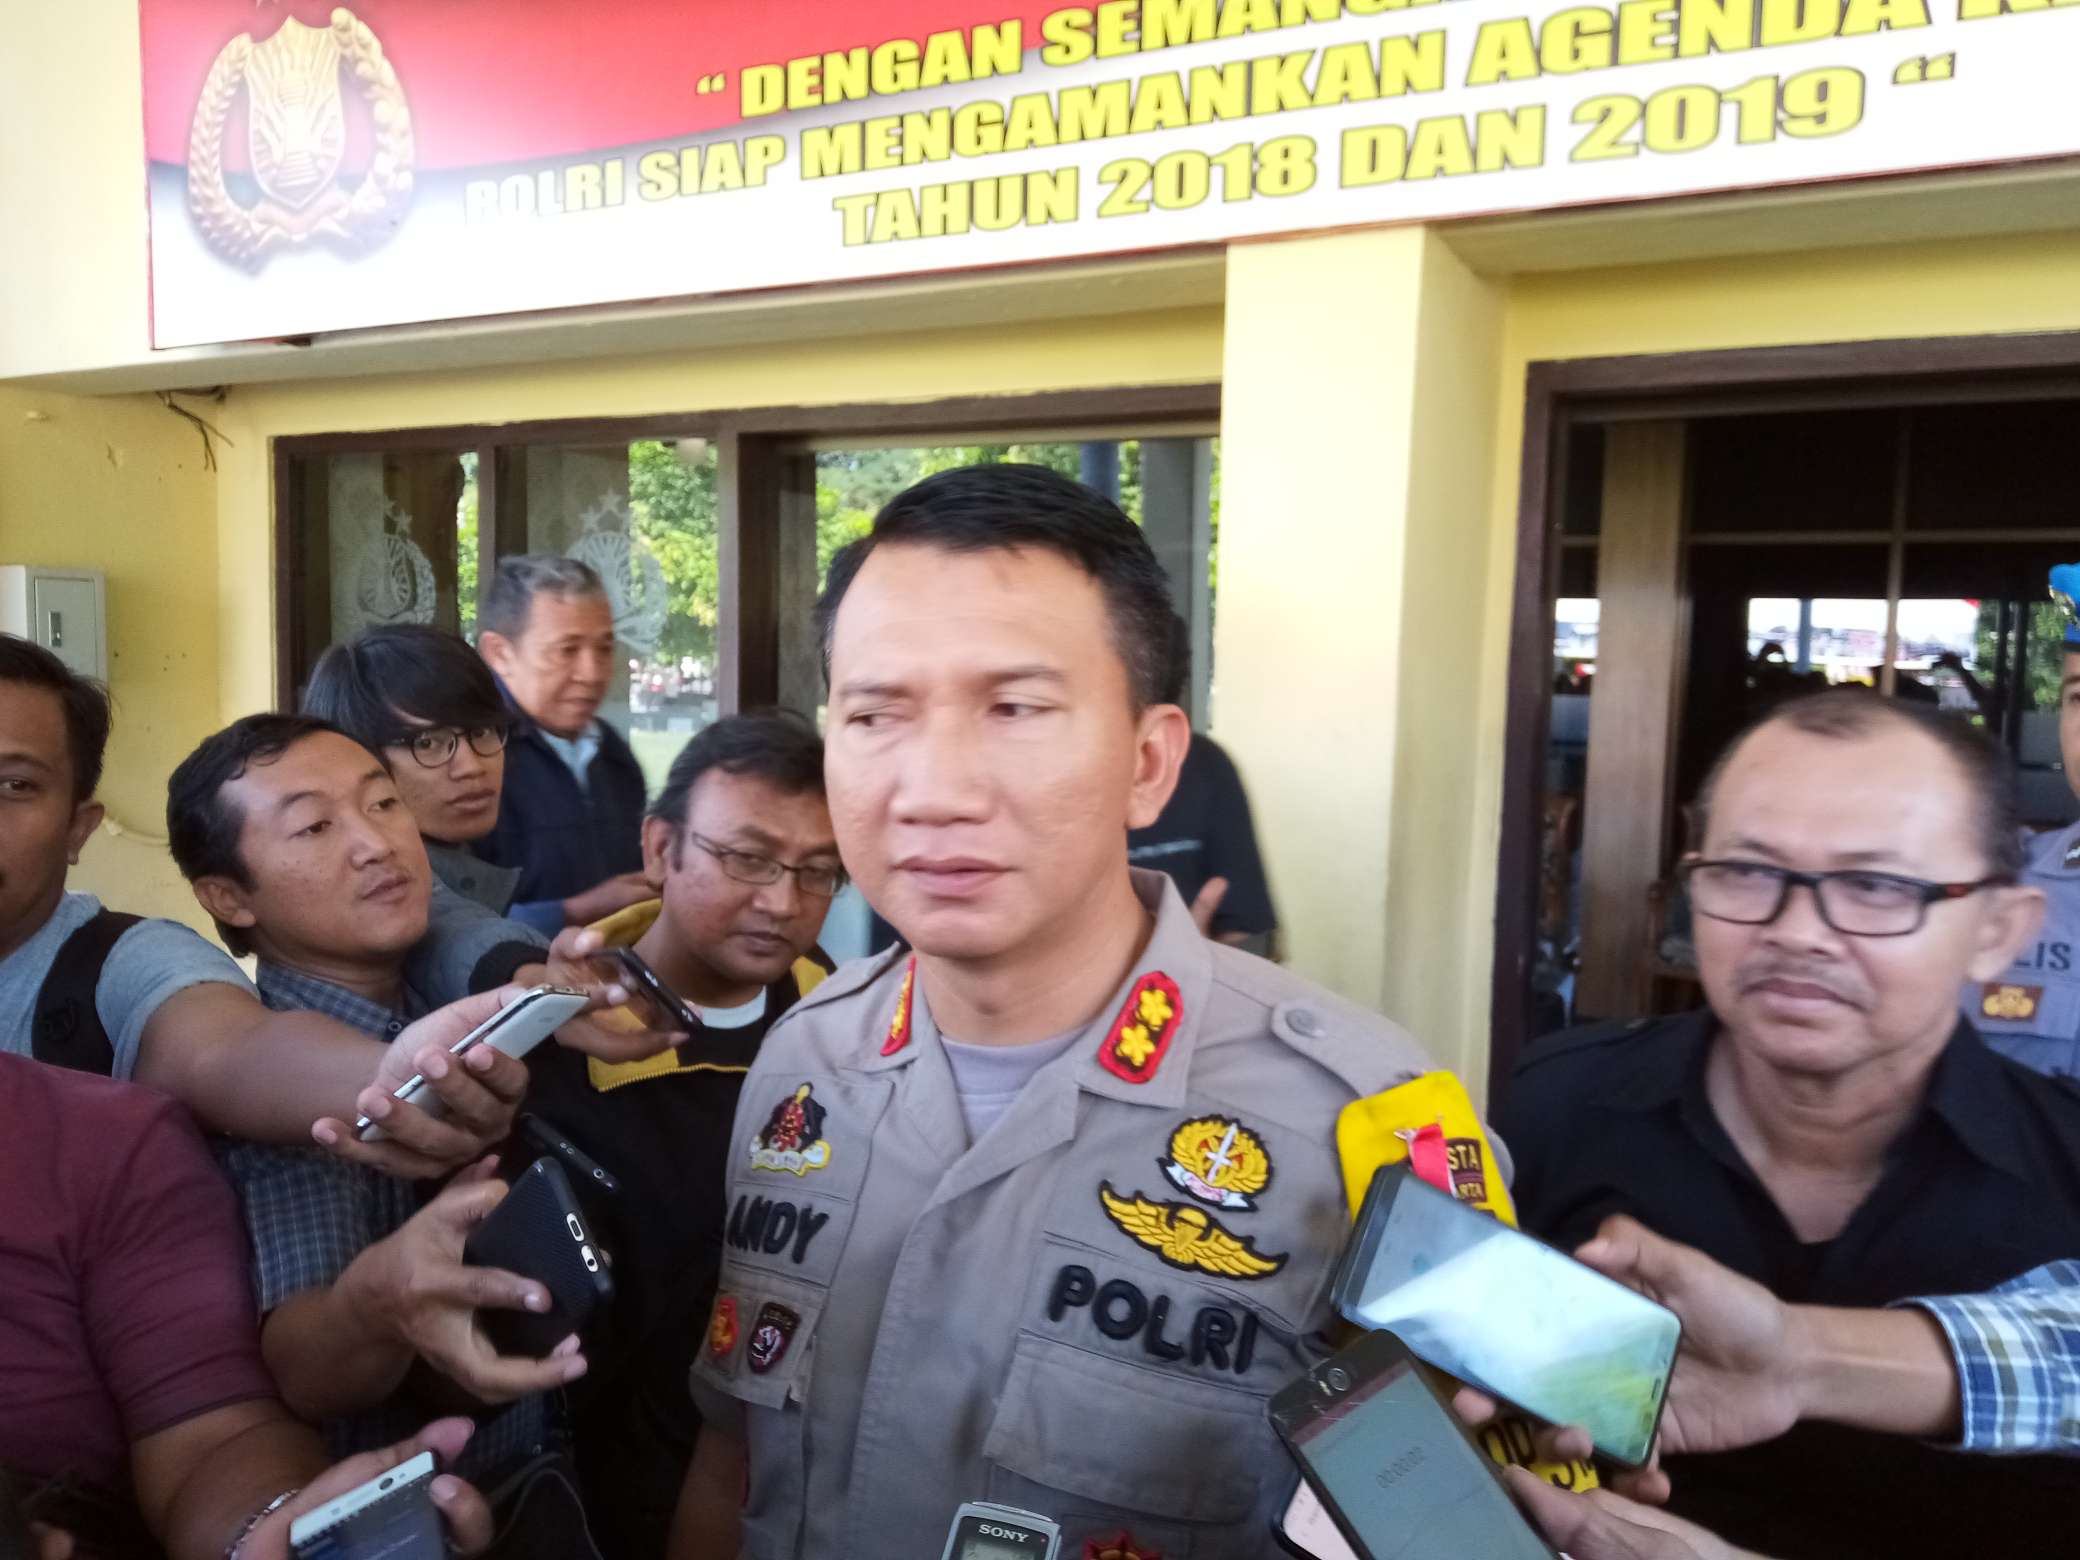 Wakapolresta Surakarta, AKBP Andi Rifai memberikan keterangan terkait pengamanan di kawasan kediaman Presiden Jokowi, Solo, Jawa Tengah, Jumat (24/5). (MP/Ismail)